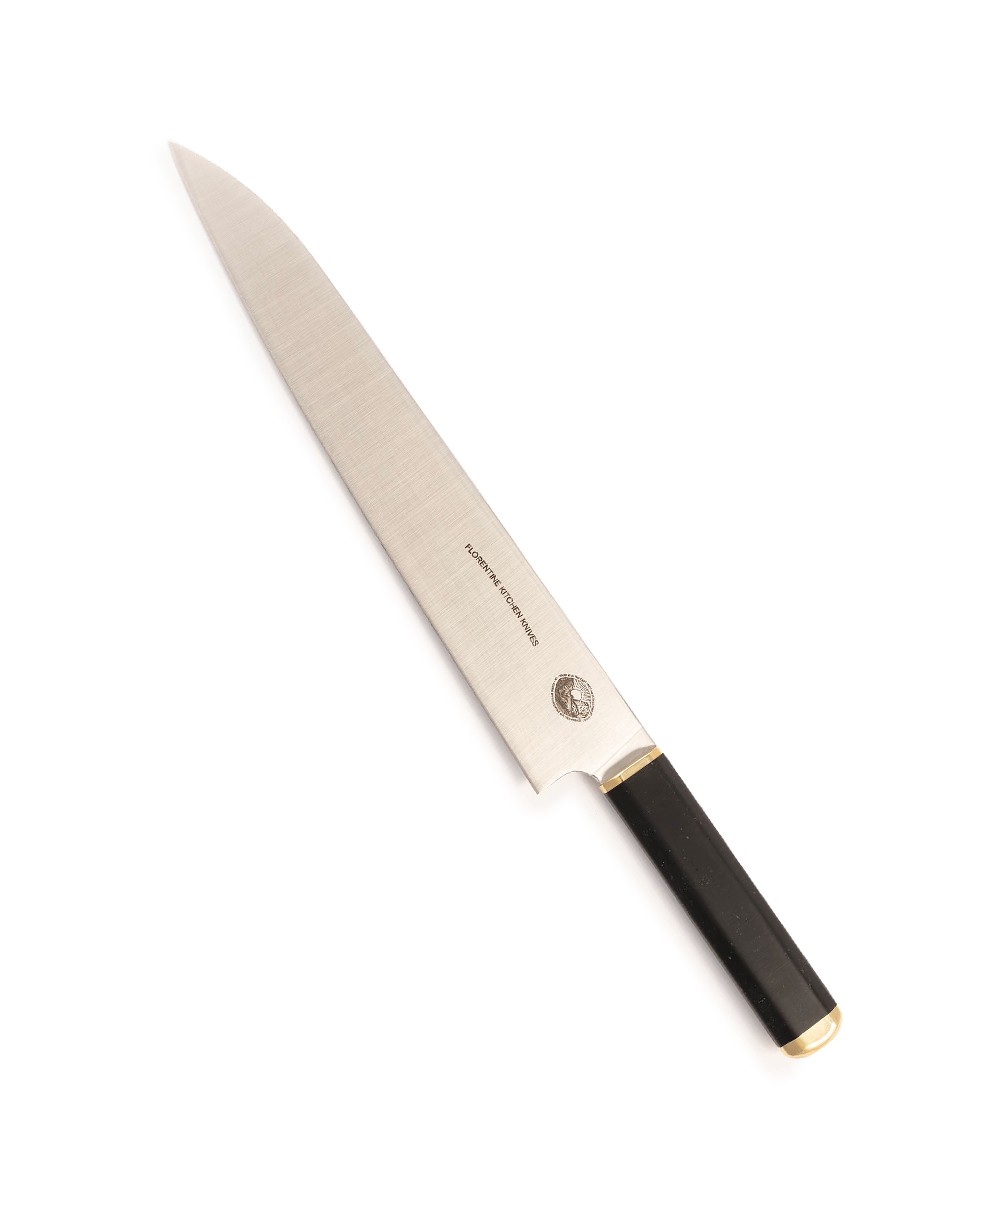 Produktbild des Kedma Sujihiki Schneidemesser in black von Florentine Kitchen Knives im RAUM concept store 